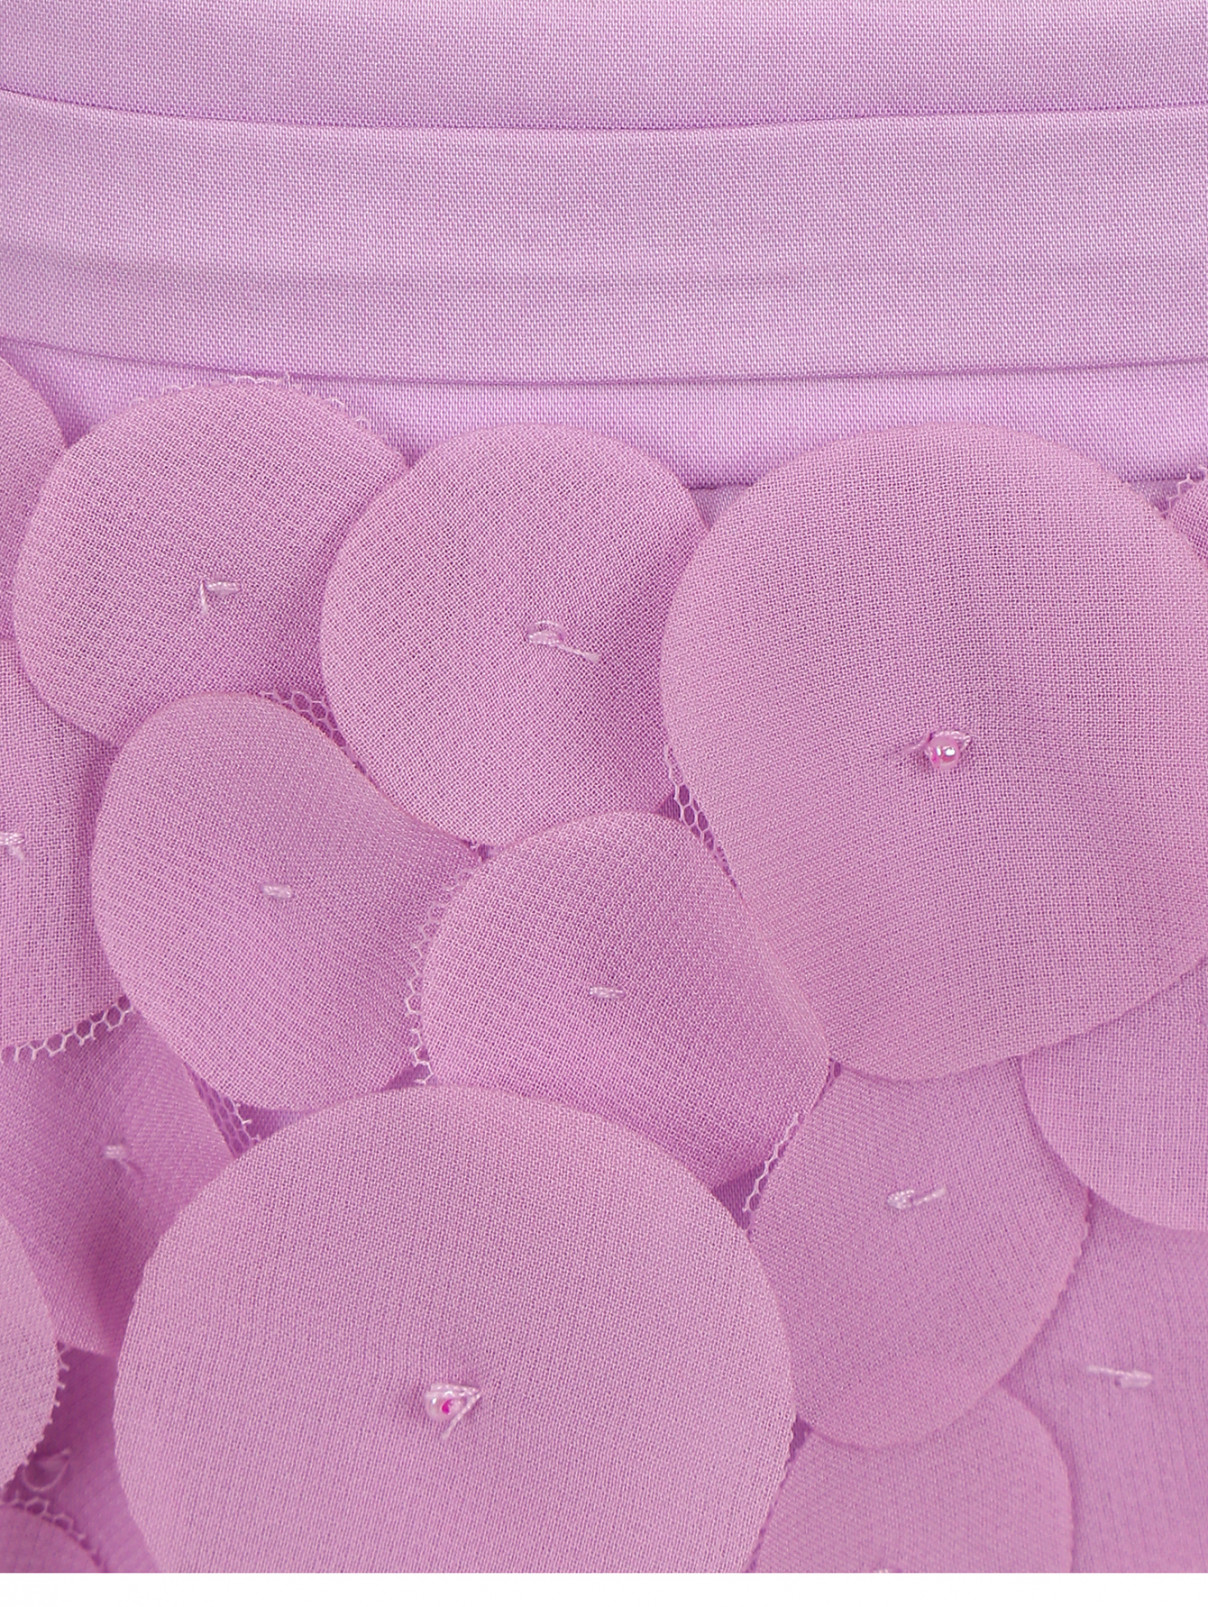 Юбка-трапеция расшитая лоскутами шифона и бисером Armani Junior  –  Деталь  – Цвет:  Фиолетовый